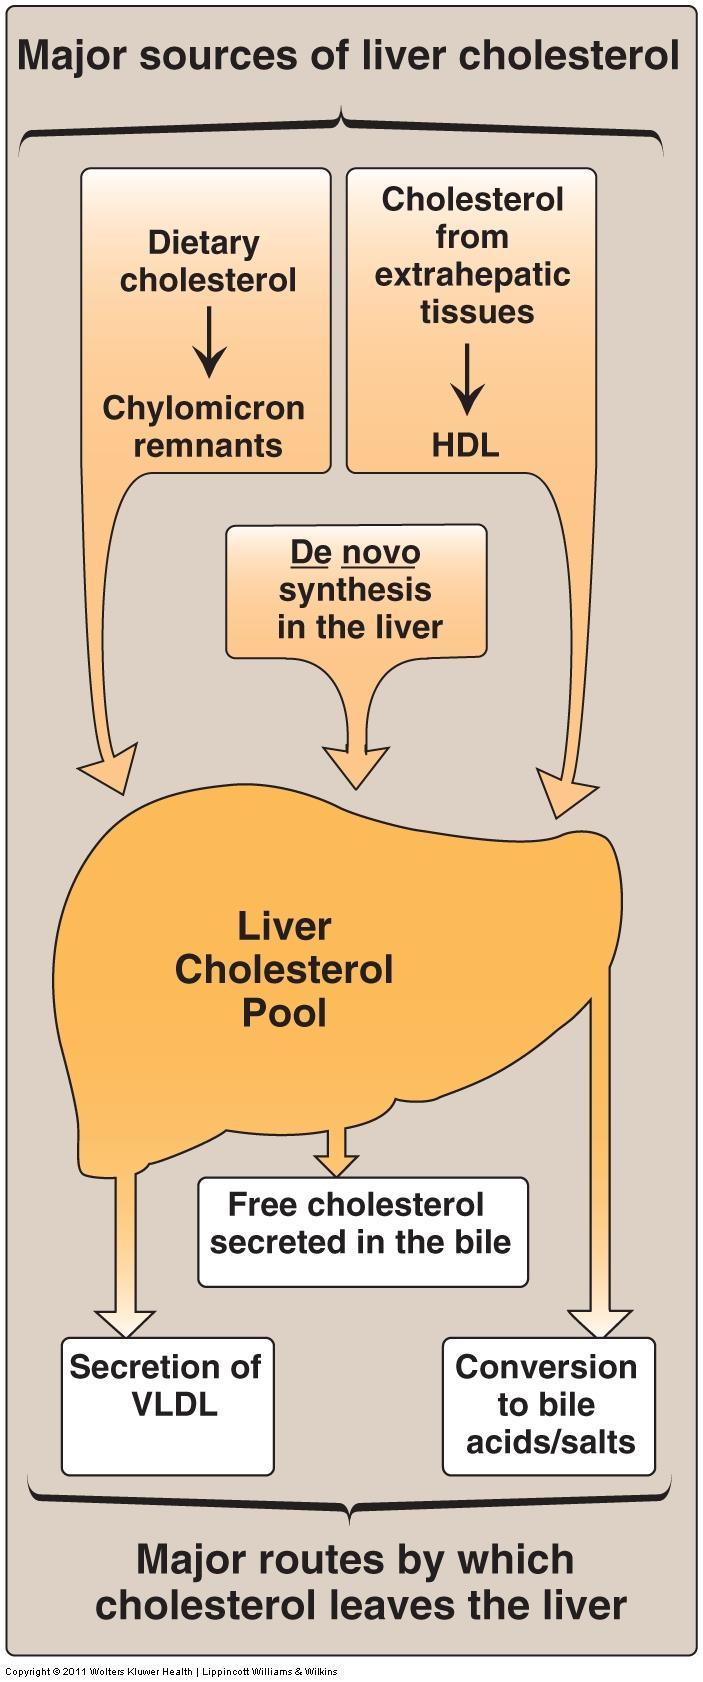 Major sources of liver cholesterol 1.